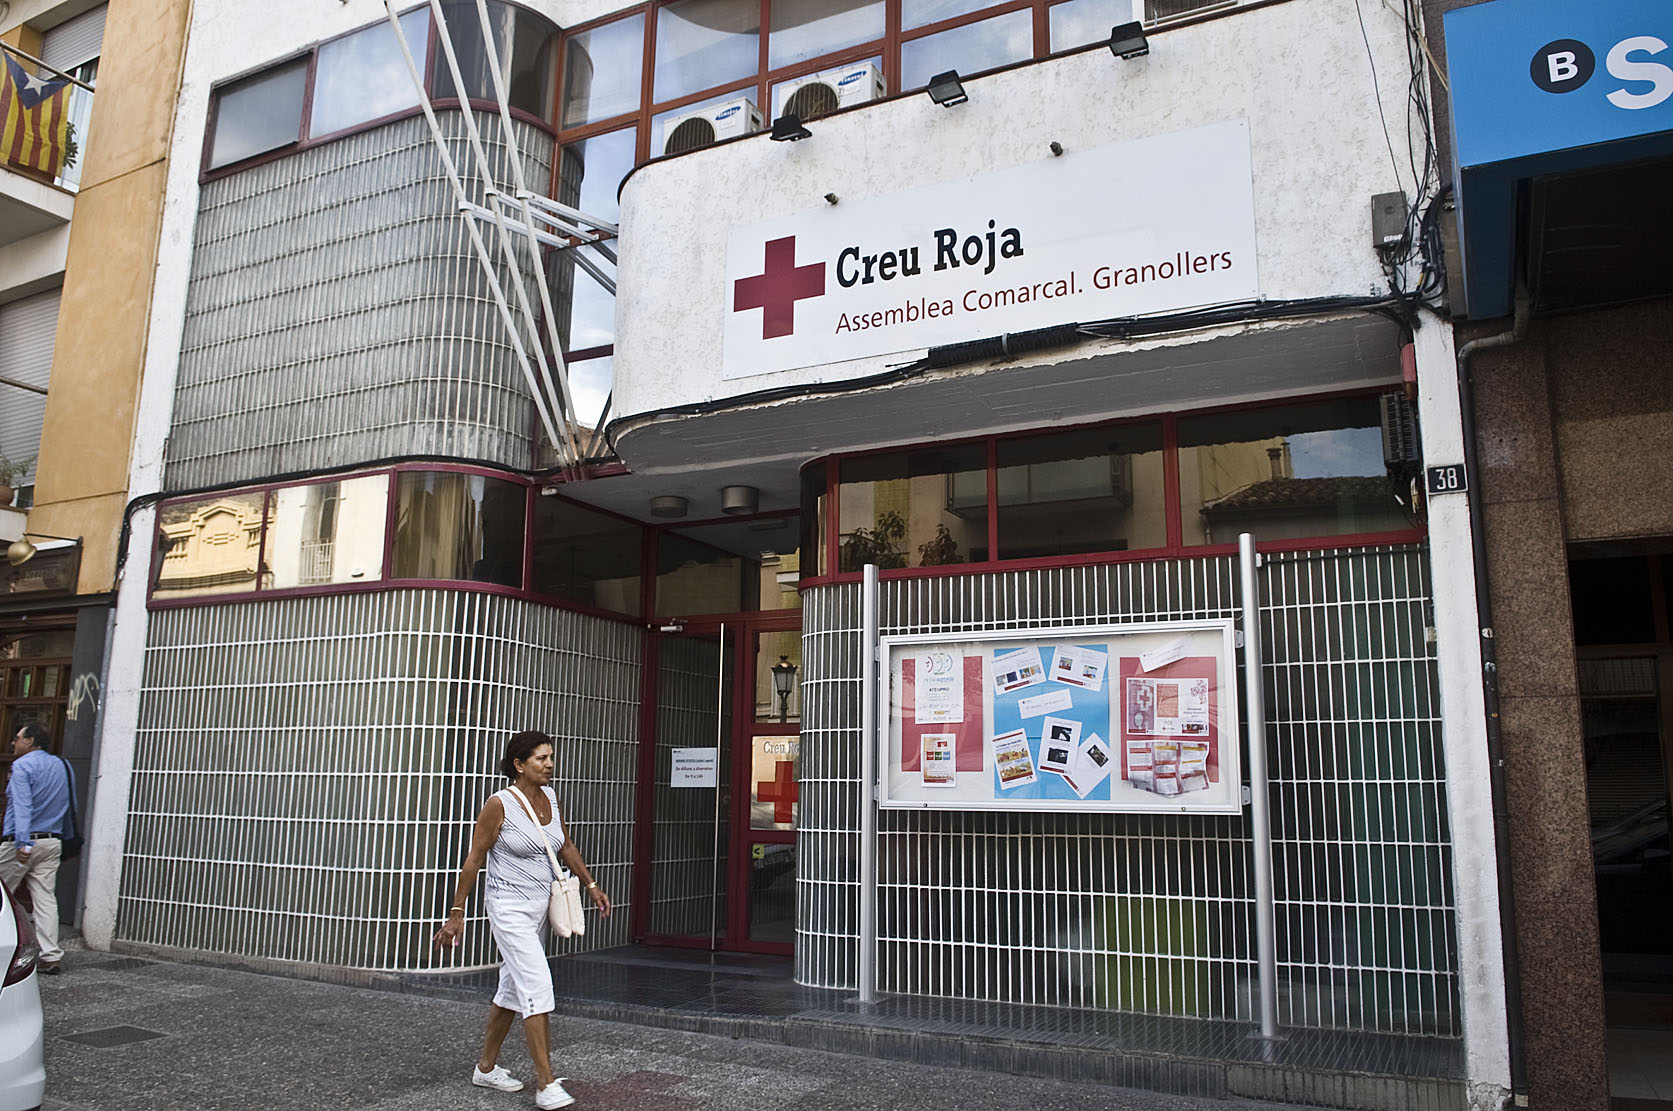 La seu de Creu Roja a Granollers, l'entitat que ha acollit els primers 15 refugiats a la ciutat